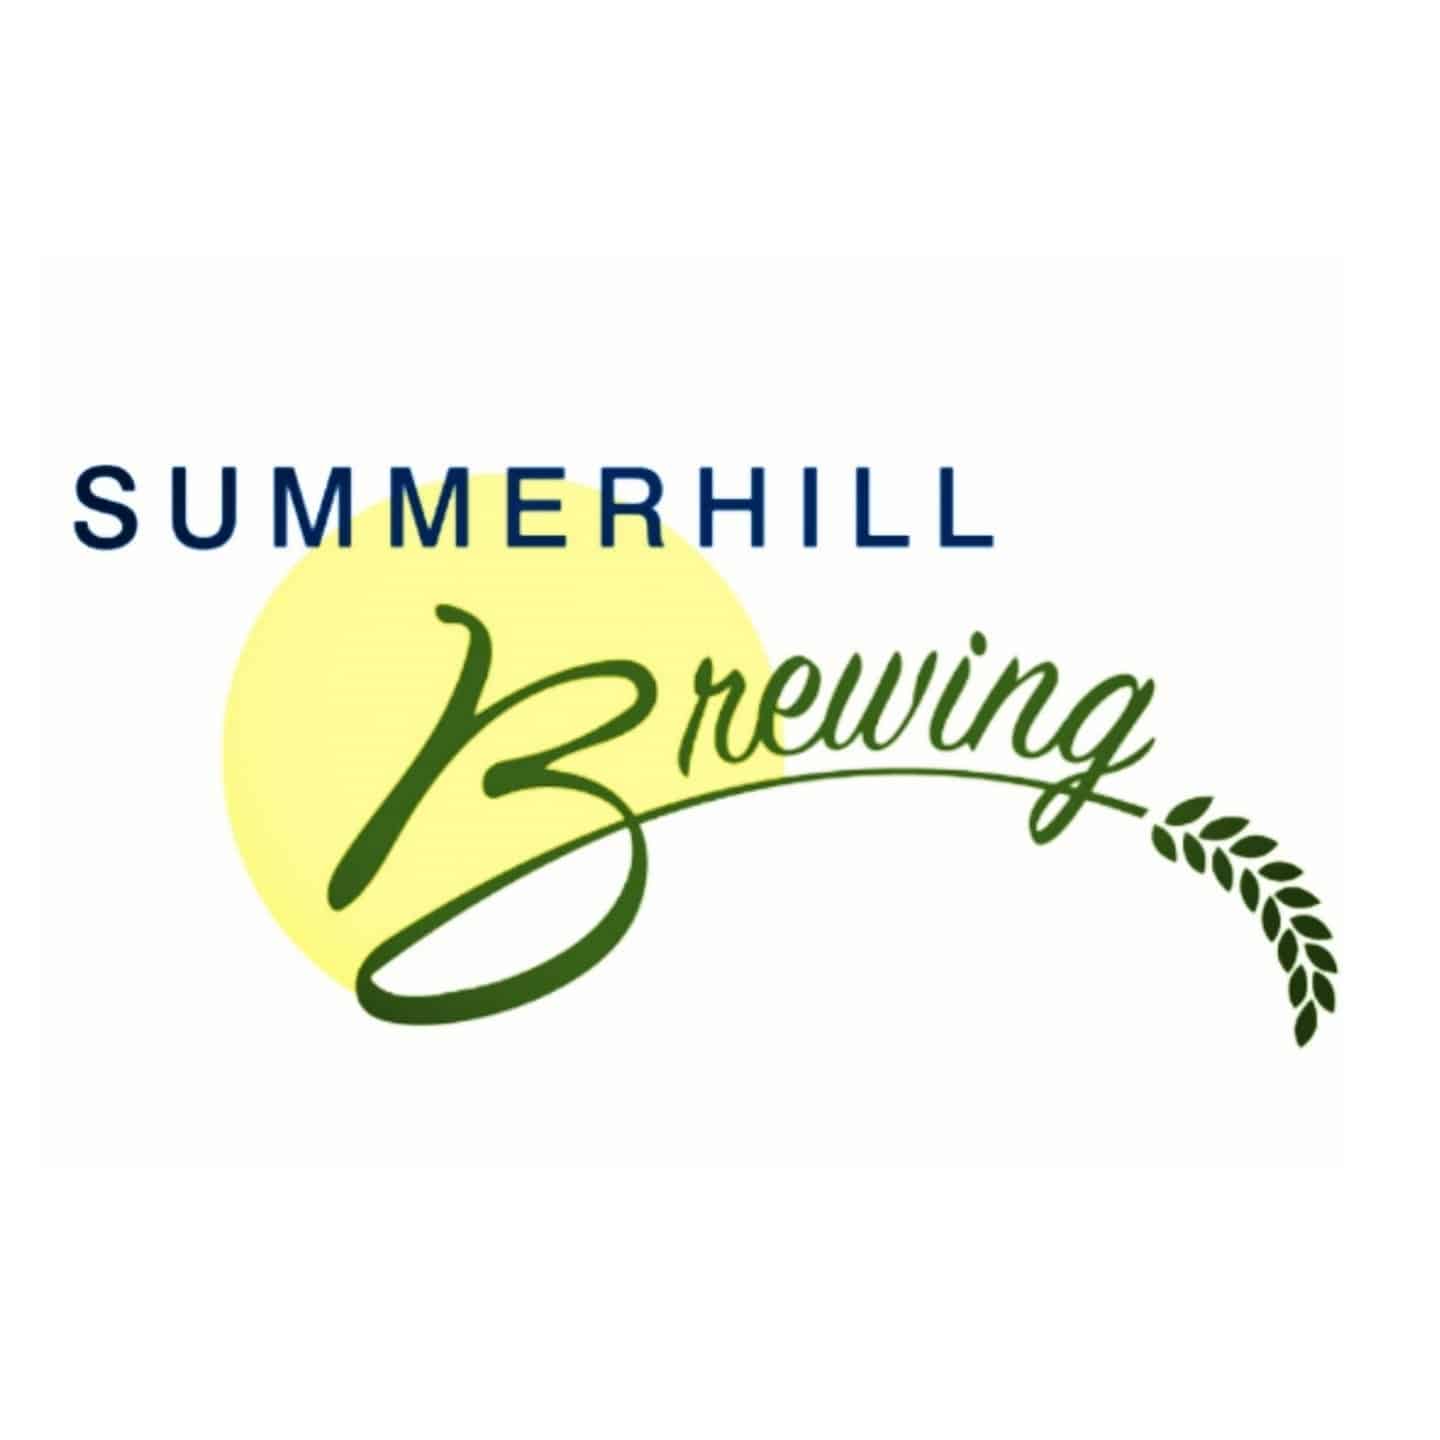 Summerhill Brewing LLC